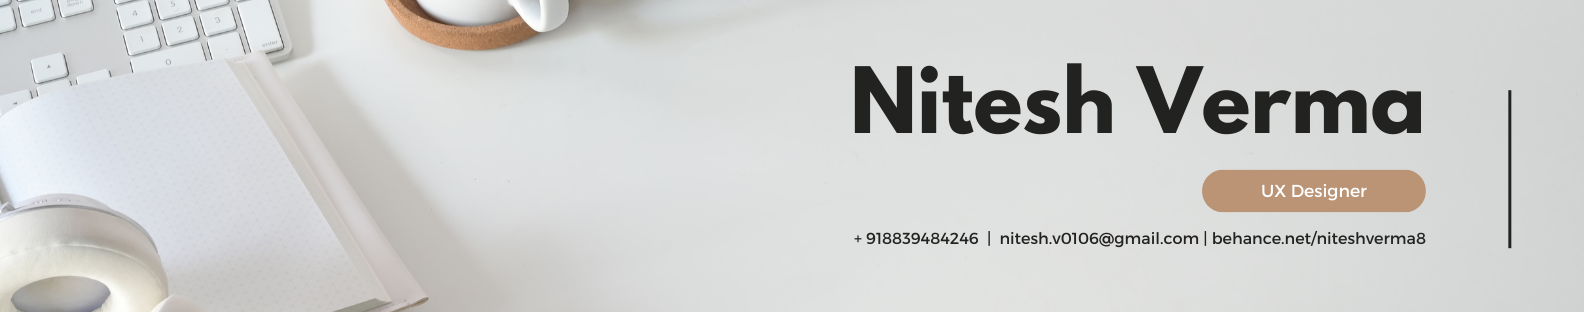 Profil-Banner von Nitesh Verma